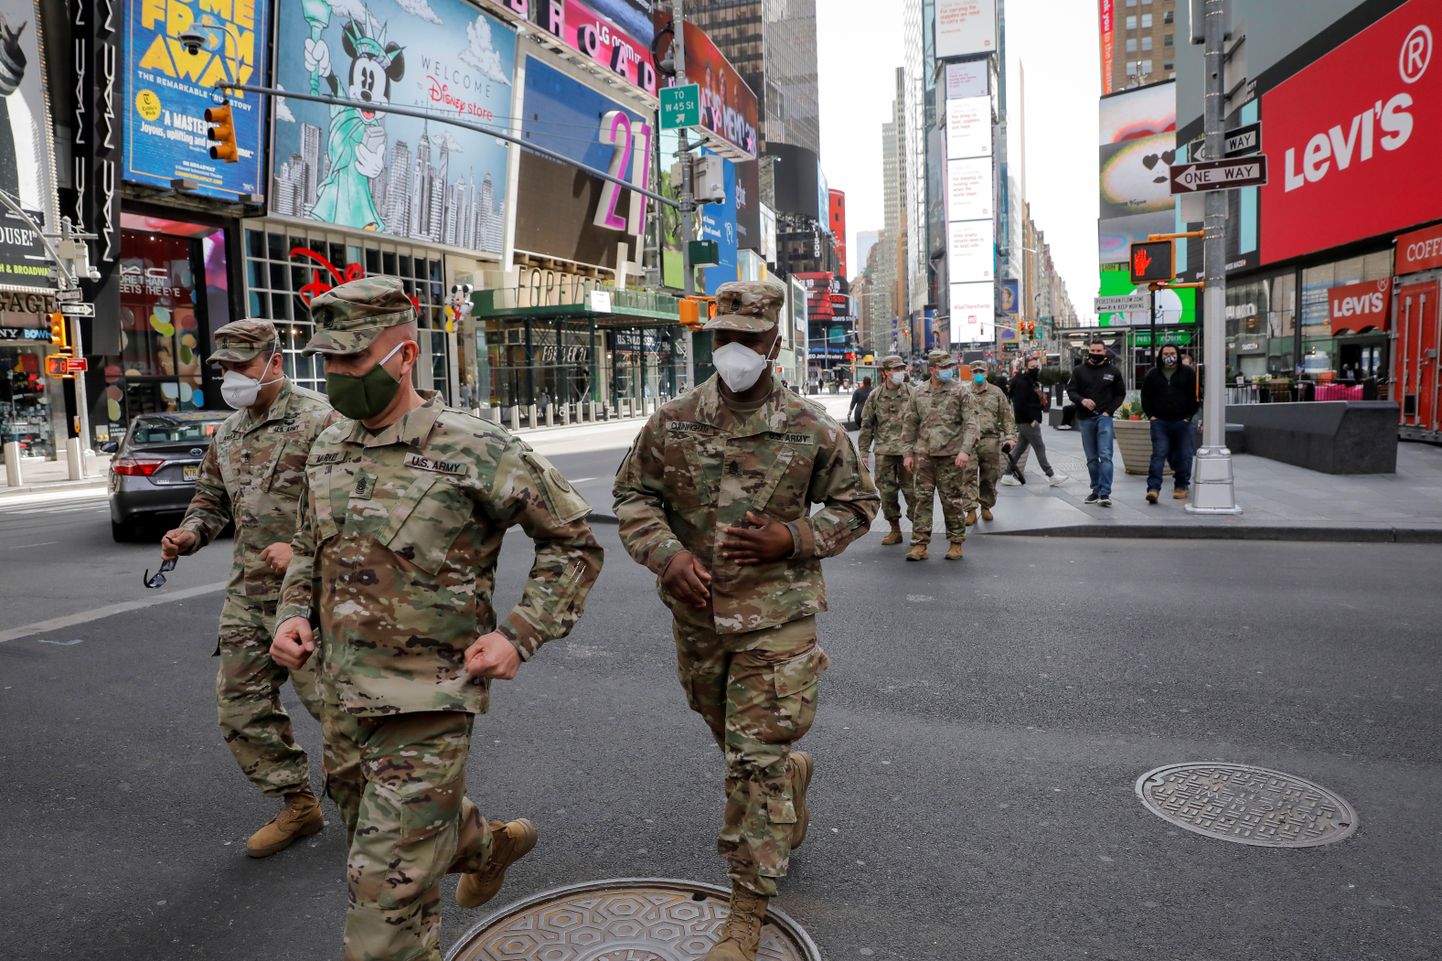 Ühes hiinlaste poolt võimendatud valesõnumis väideti, et president Donald Trump kavatseb sõjaväelased ja rahvuskaartlased karantiini jõustamiseks tänavatele saata.